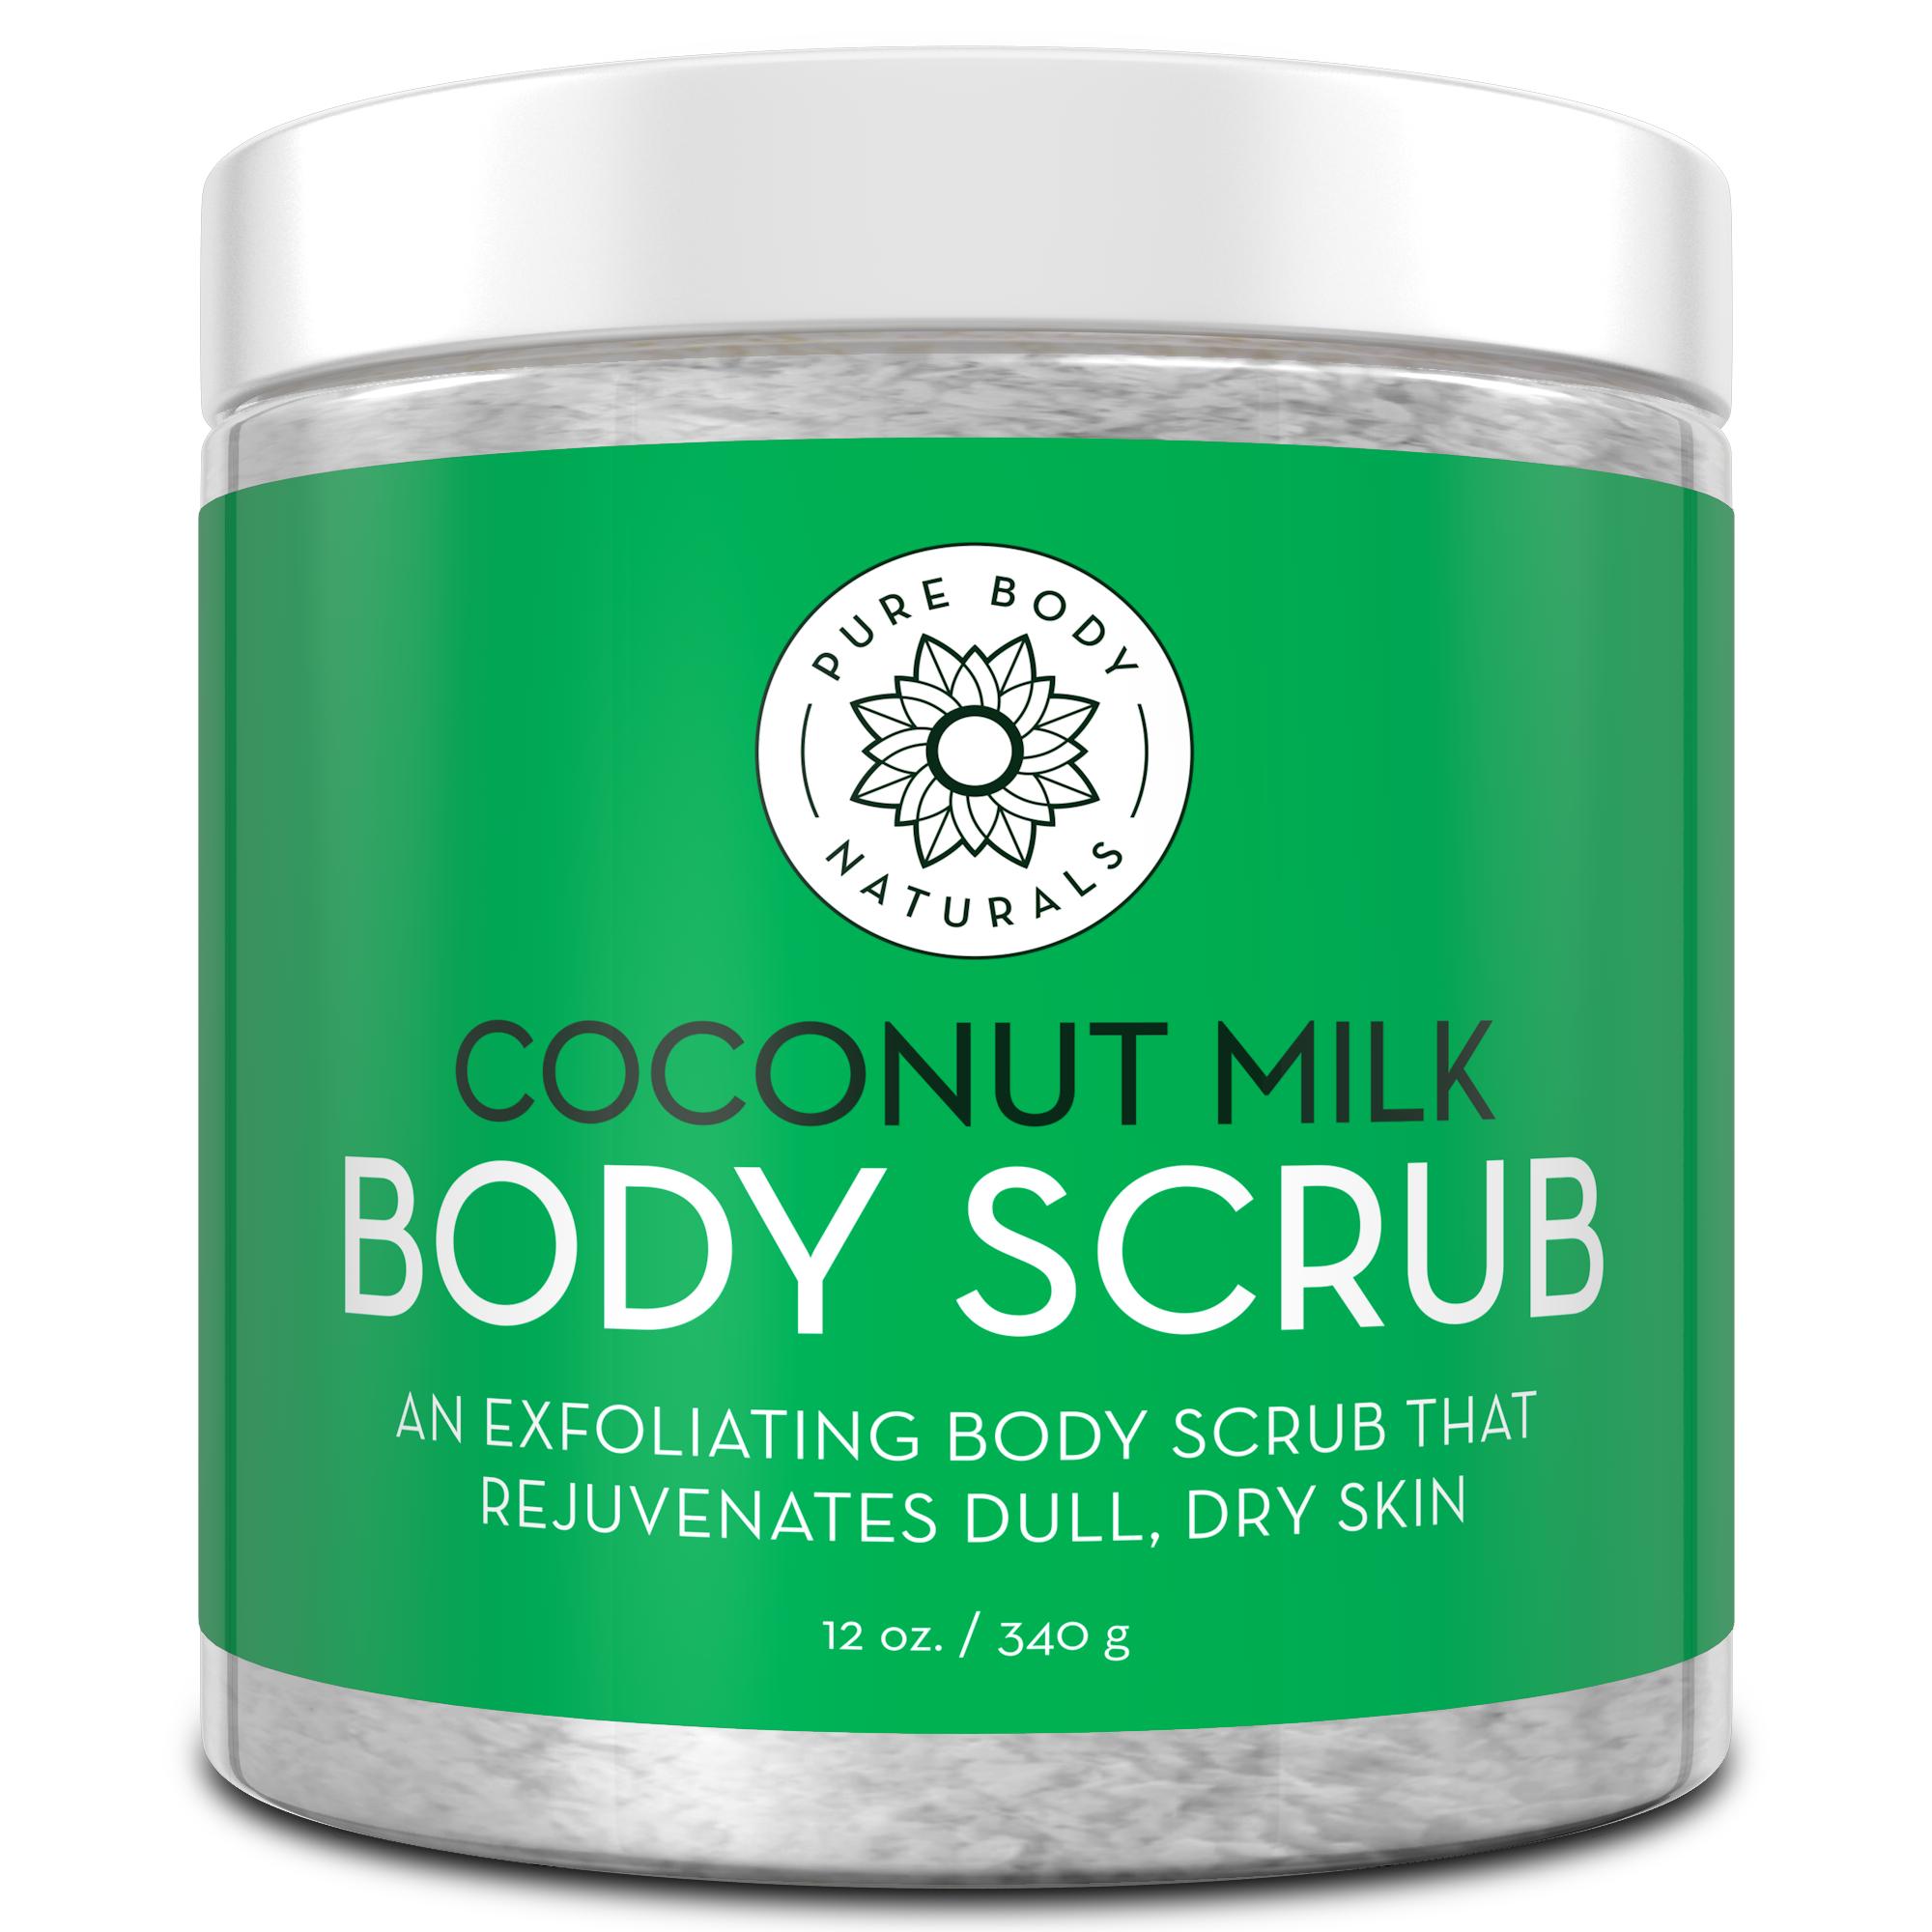 Coconut Milk Exfoliating Body Scrub Pure Body Naturals